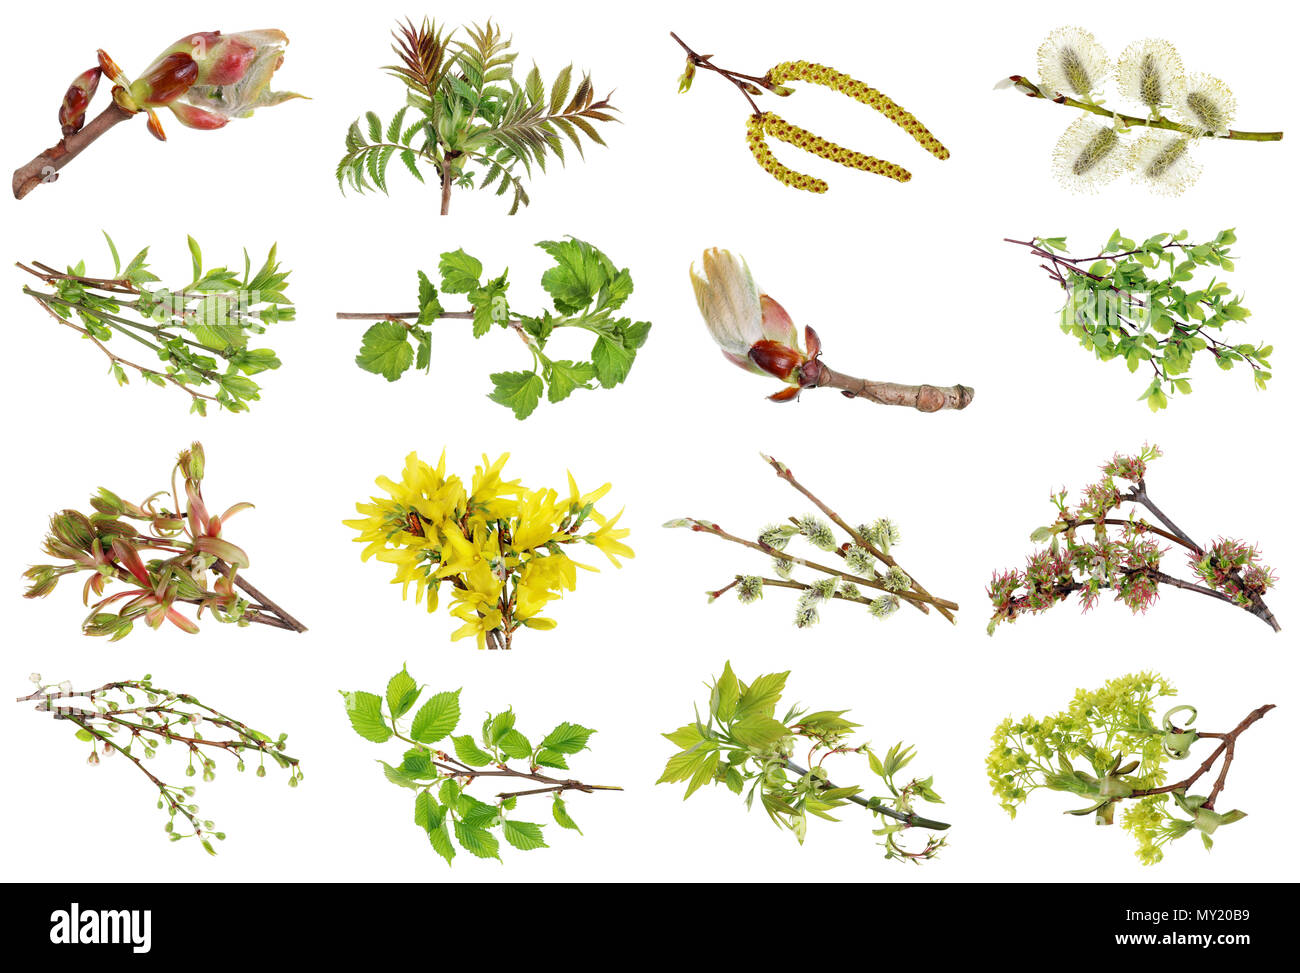 Européen de printemps Avril plantes et fleurs sauvages. Studio de prises de vue macro. Les images intégrales trouver dans mon portefeuille Banque D'Images